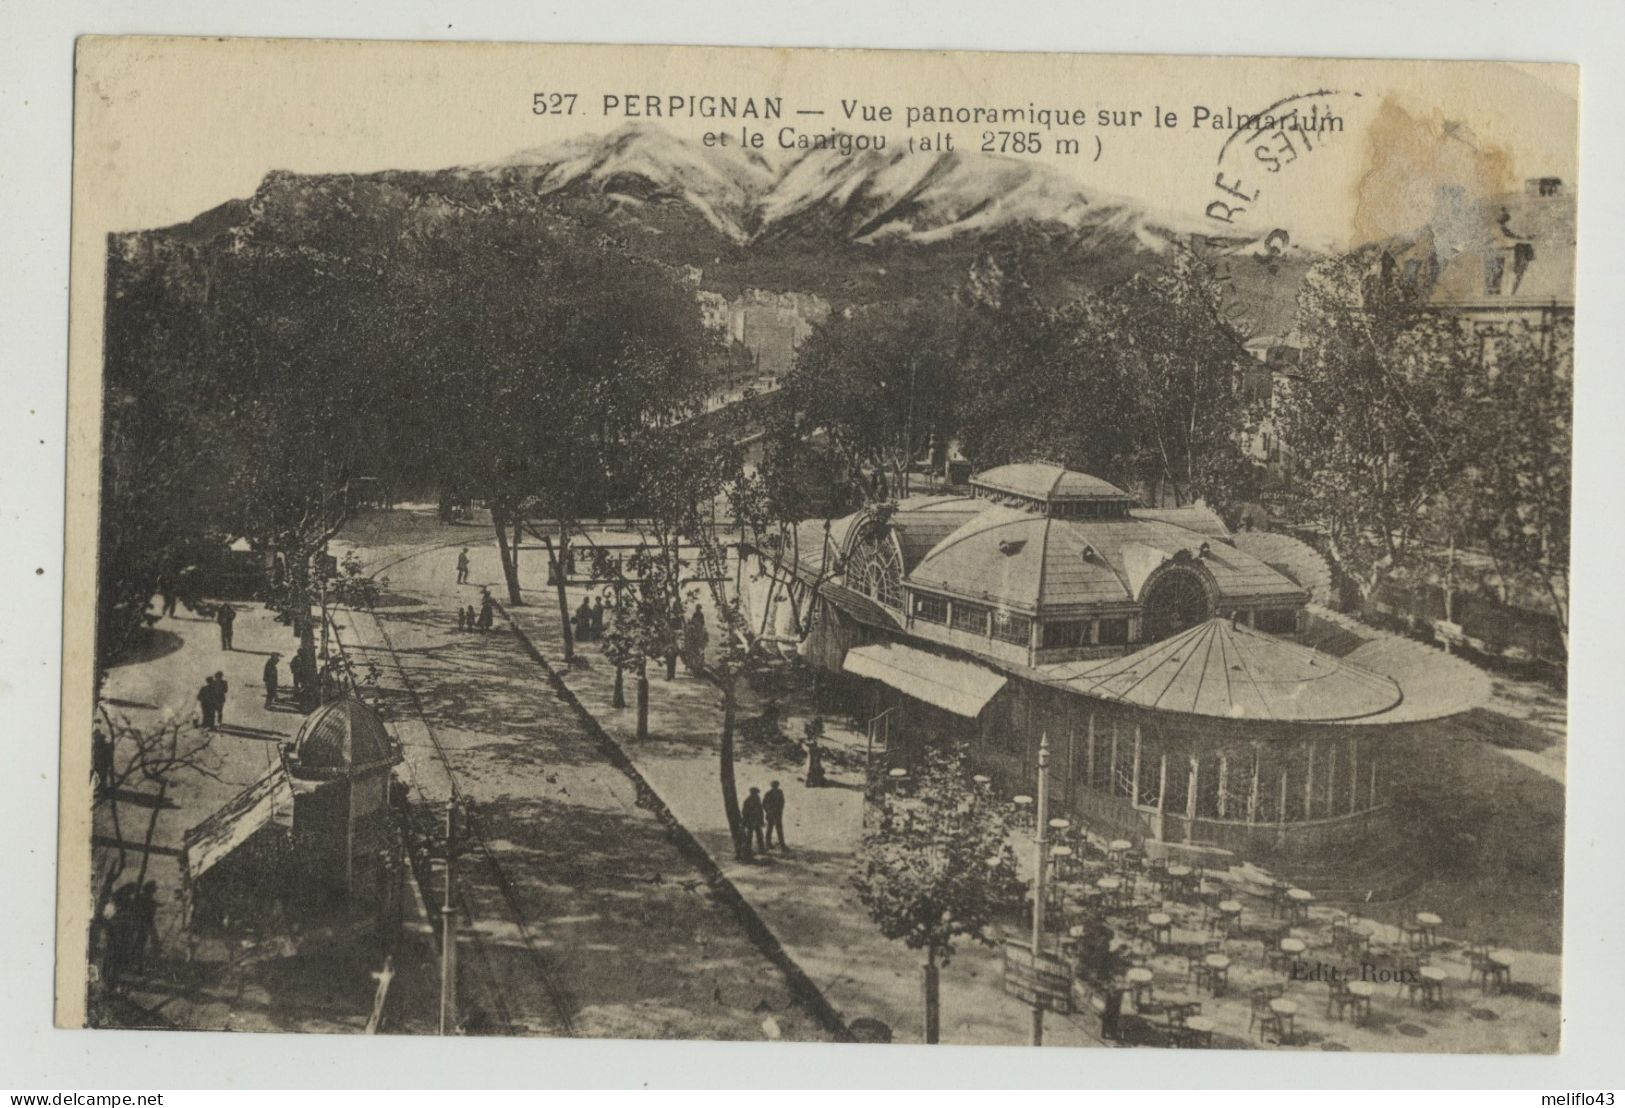 Perpignan - Lot N° 3 De 10 CPA (Toutes Scannées) - 5 - 99 Postcards